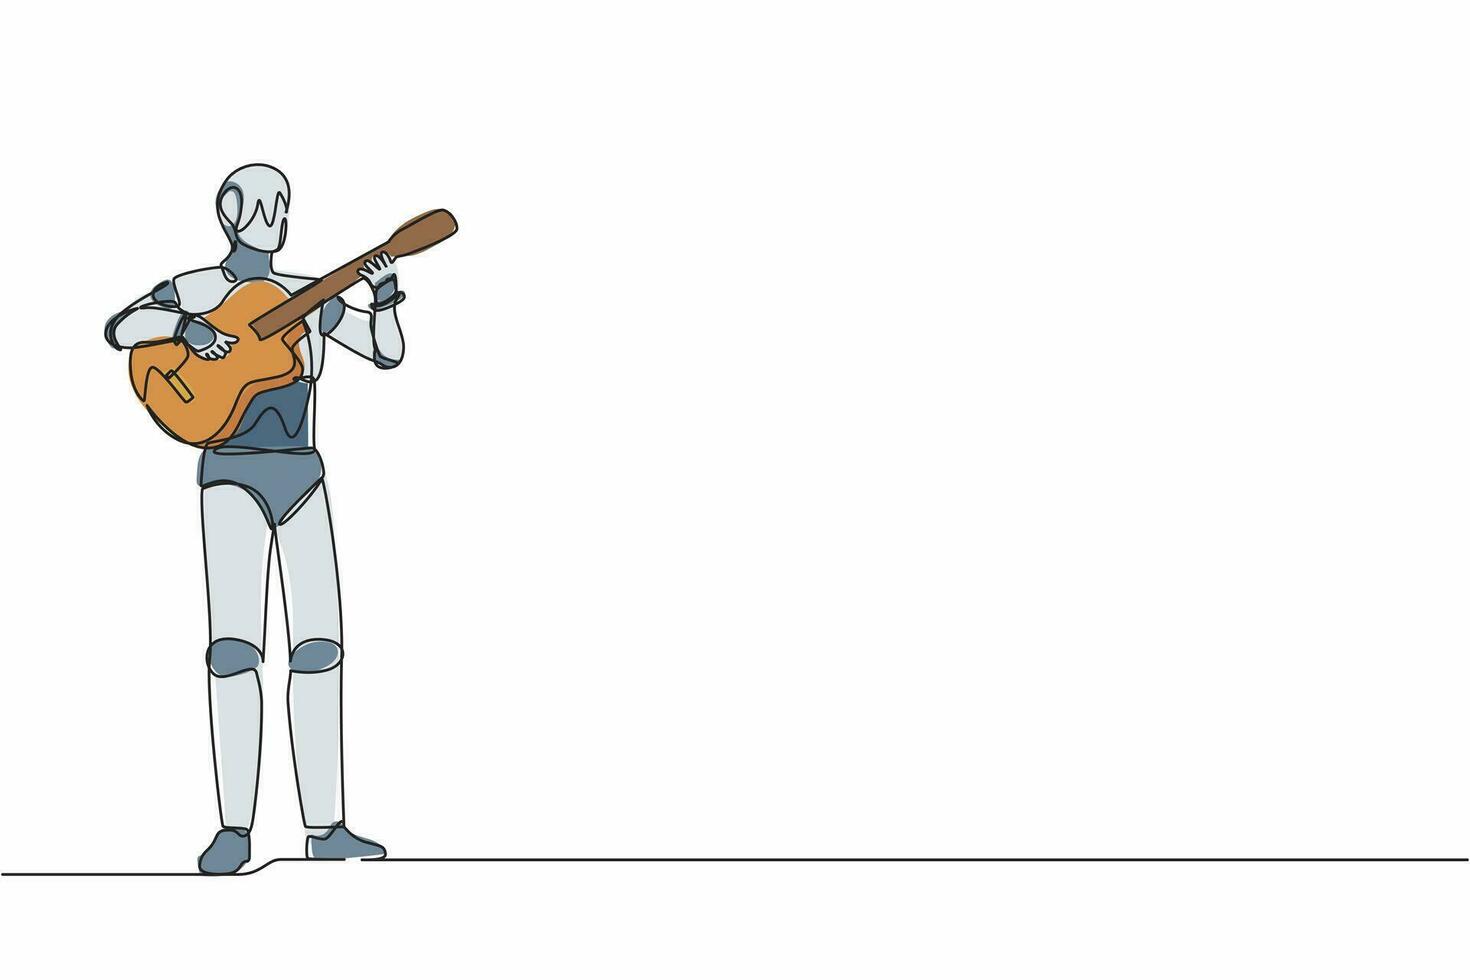 robot de dibujo de una sola línea continua tocando la guitarra acústica en la actuación musical. Inteligencia artificial robótica moderna. industria de la tecnología electrónica. ilustración de vector de diseño de dibujo de una línea